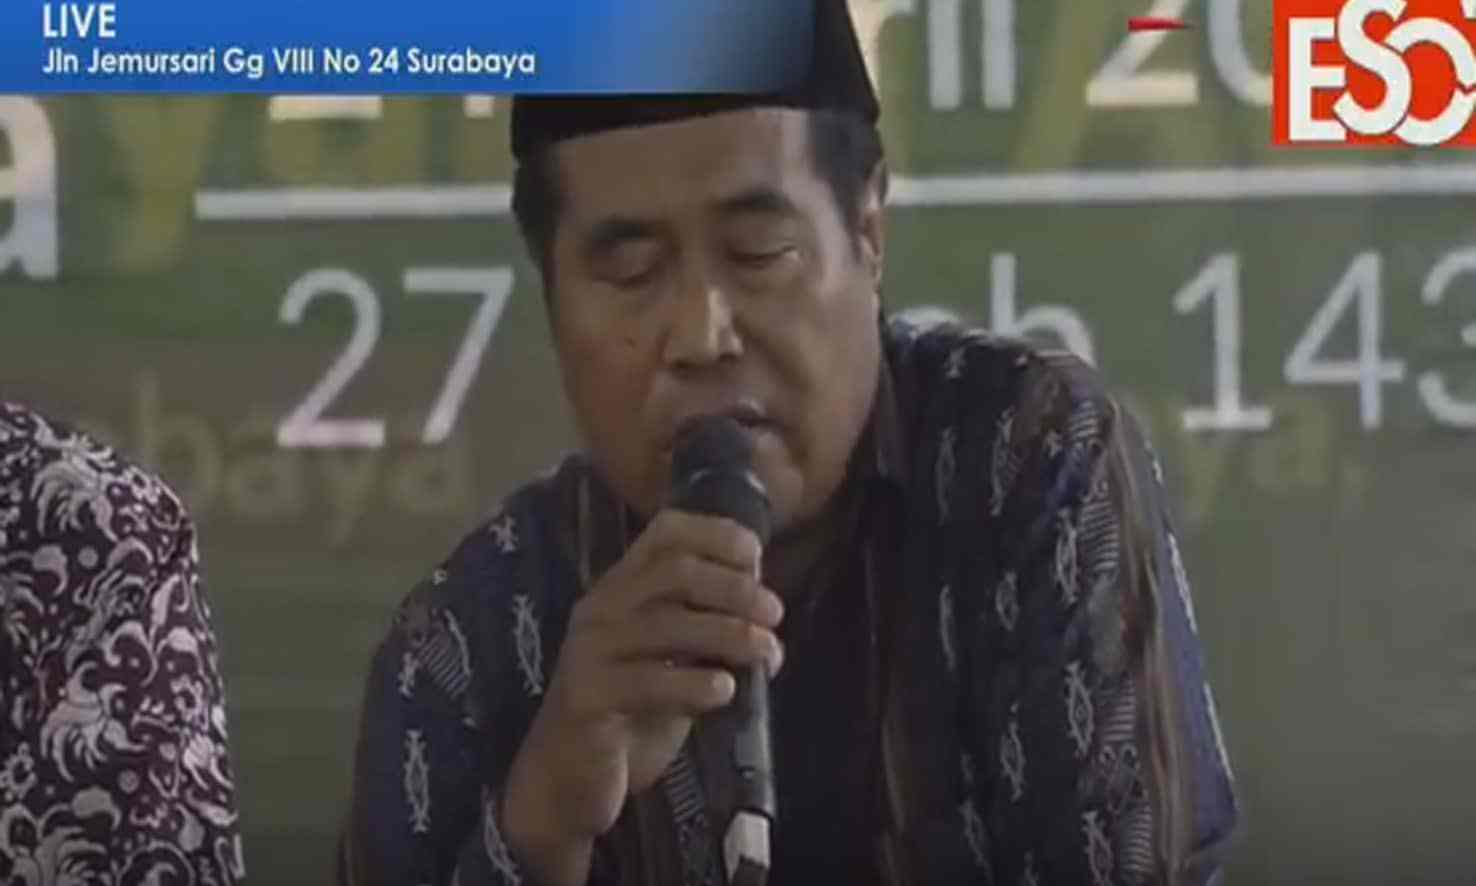 وفاة أشهر المقرئين في إندونيسيا وهو يتلو آيات من القرآن الكريم أمام الحاضرين